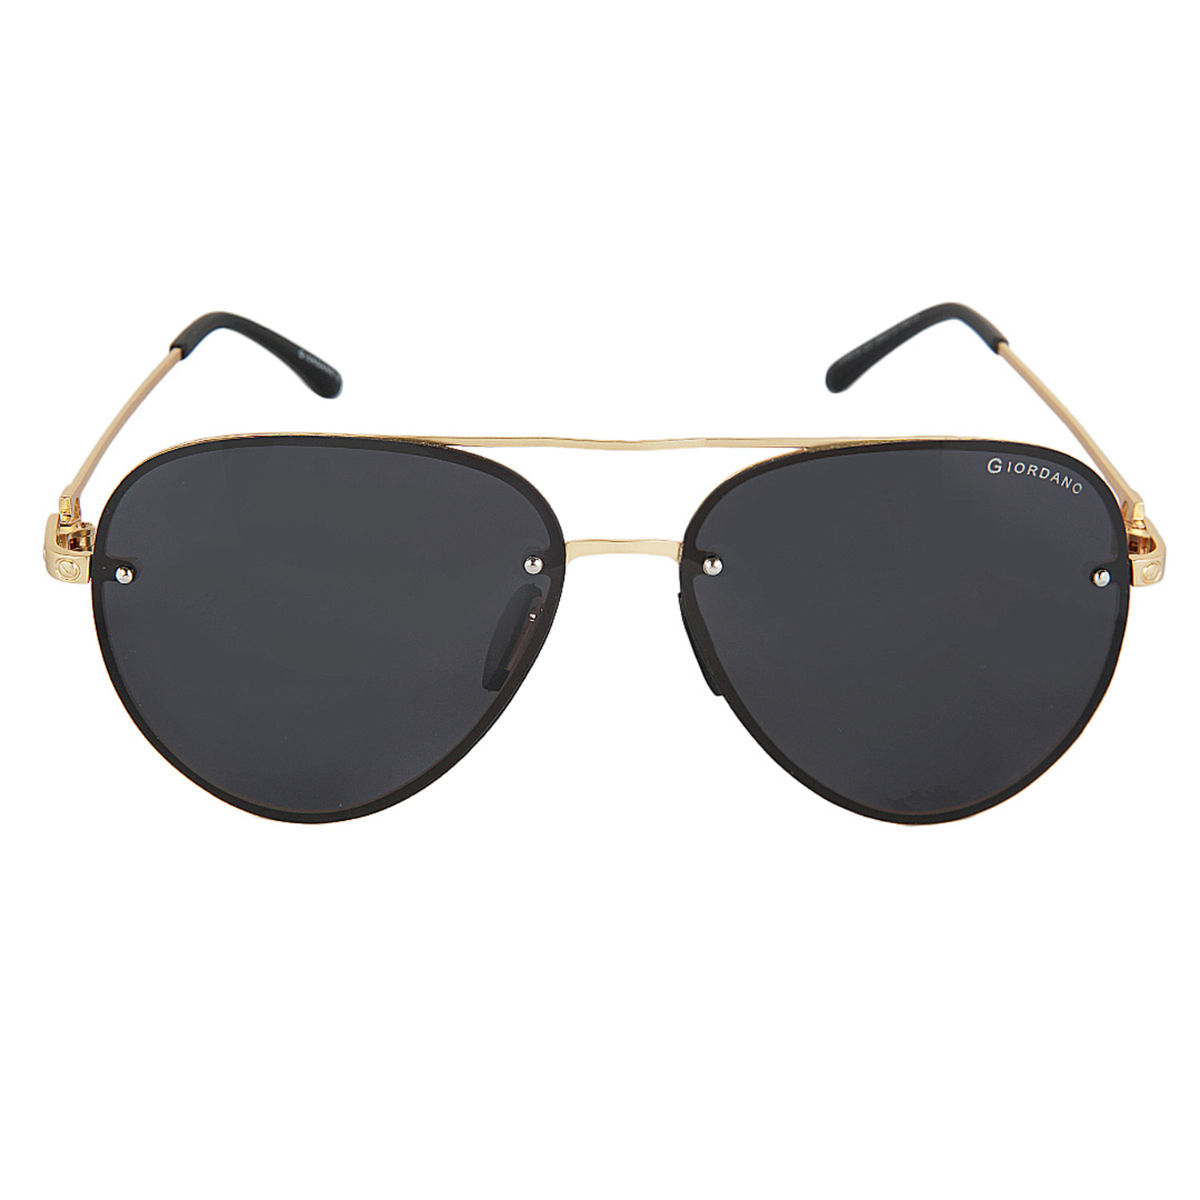 Buy Giordano Polarized Sunglasses Uv Protected Use for Men - Ga90324C02  (59) Online